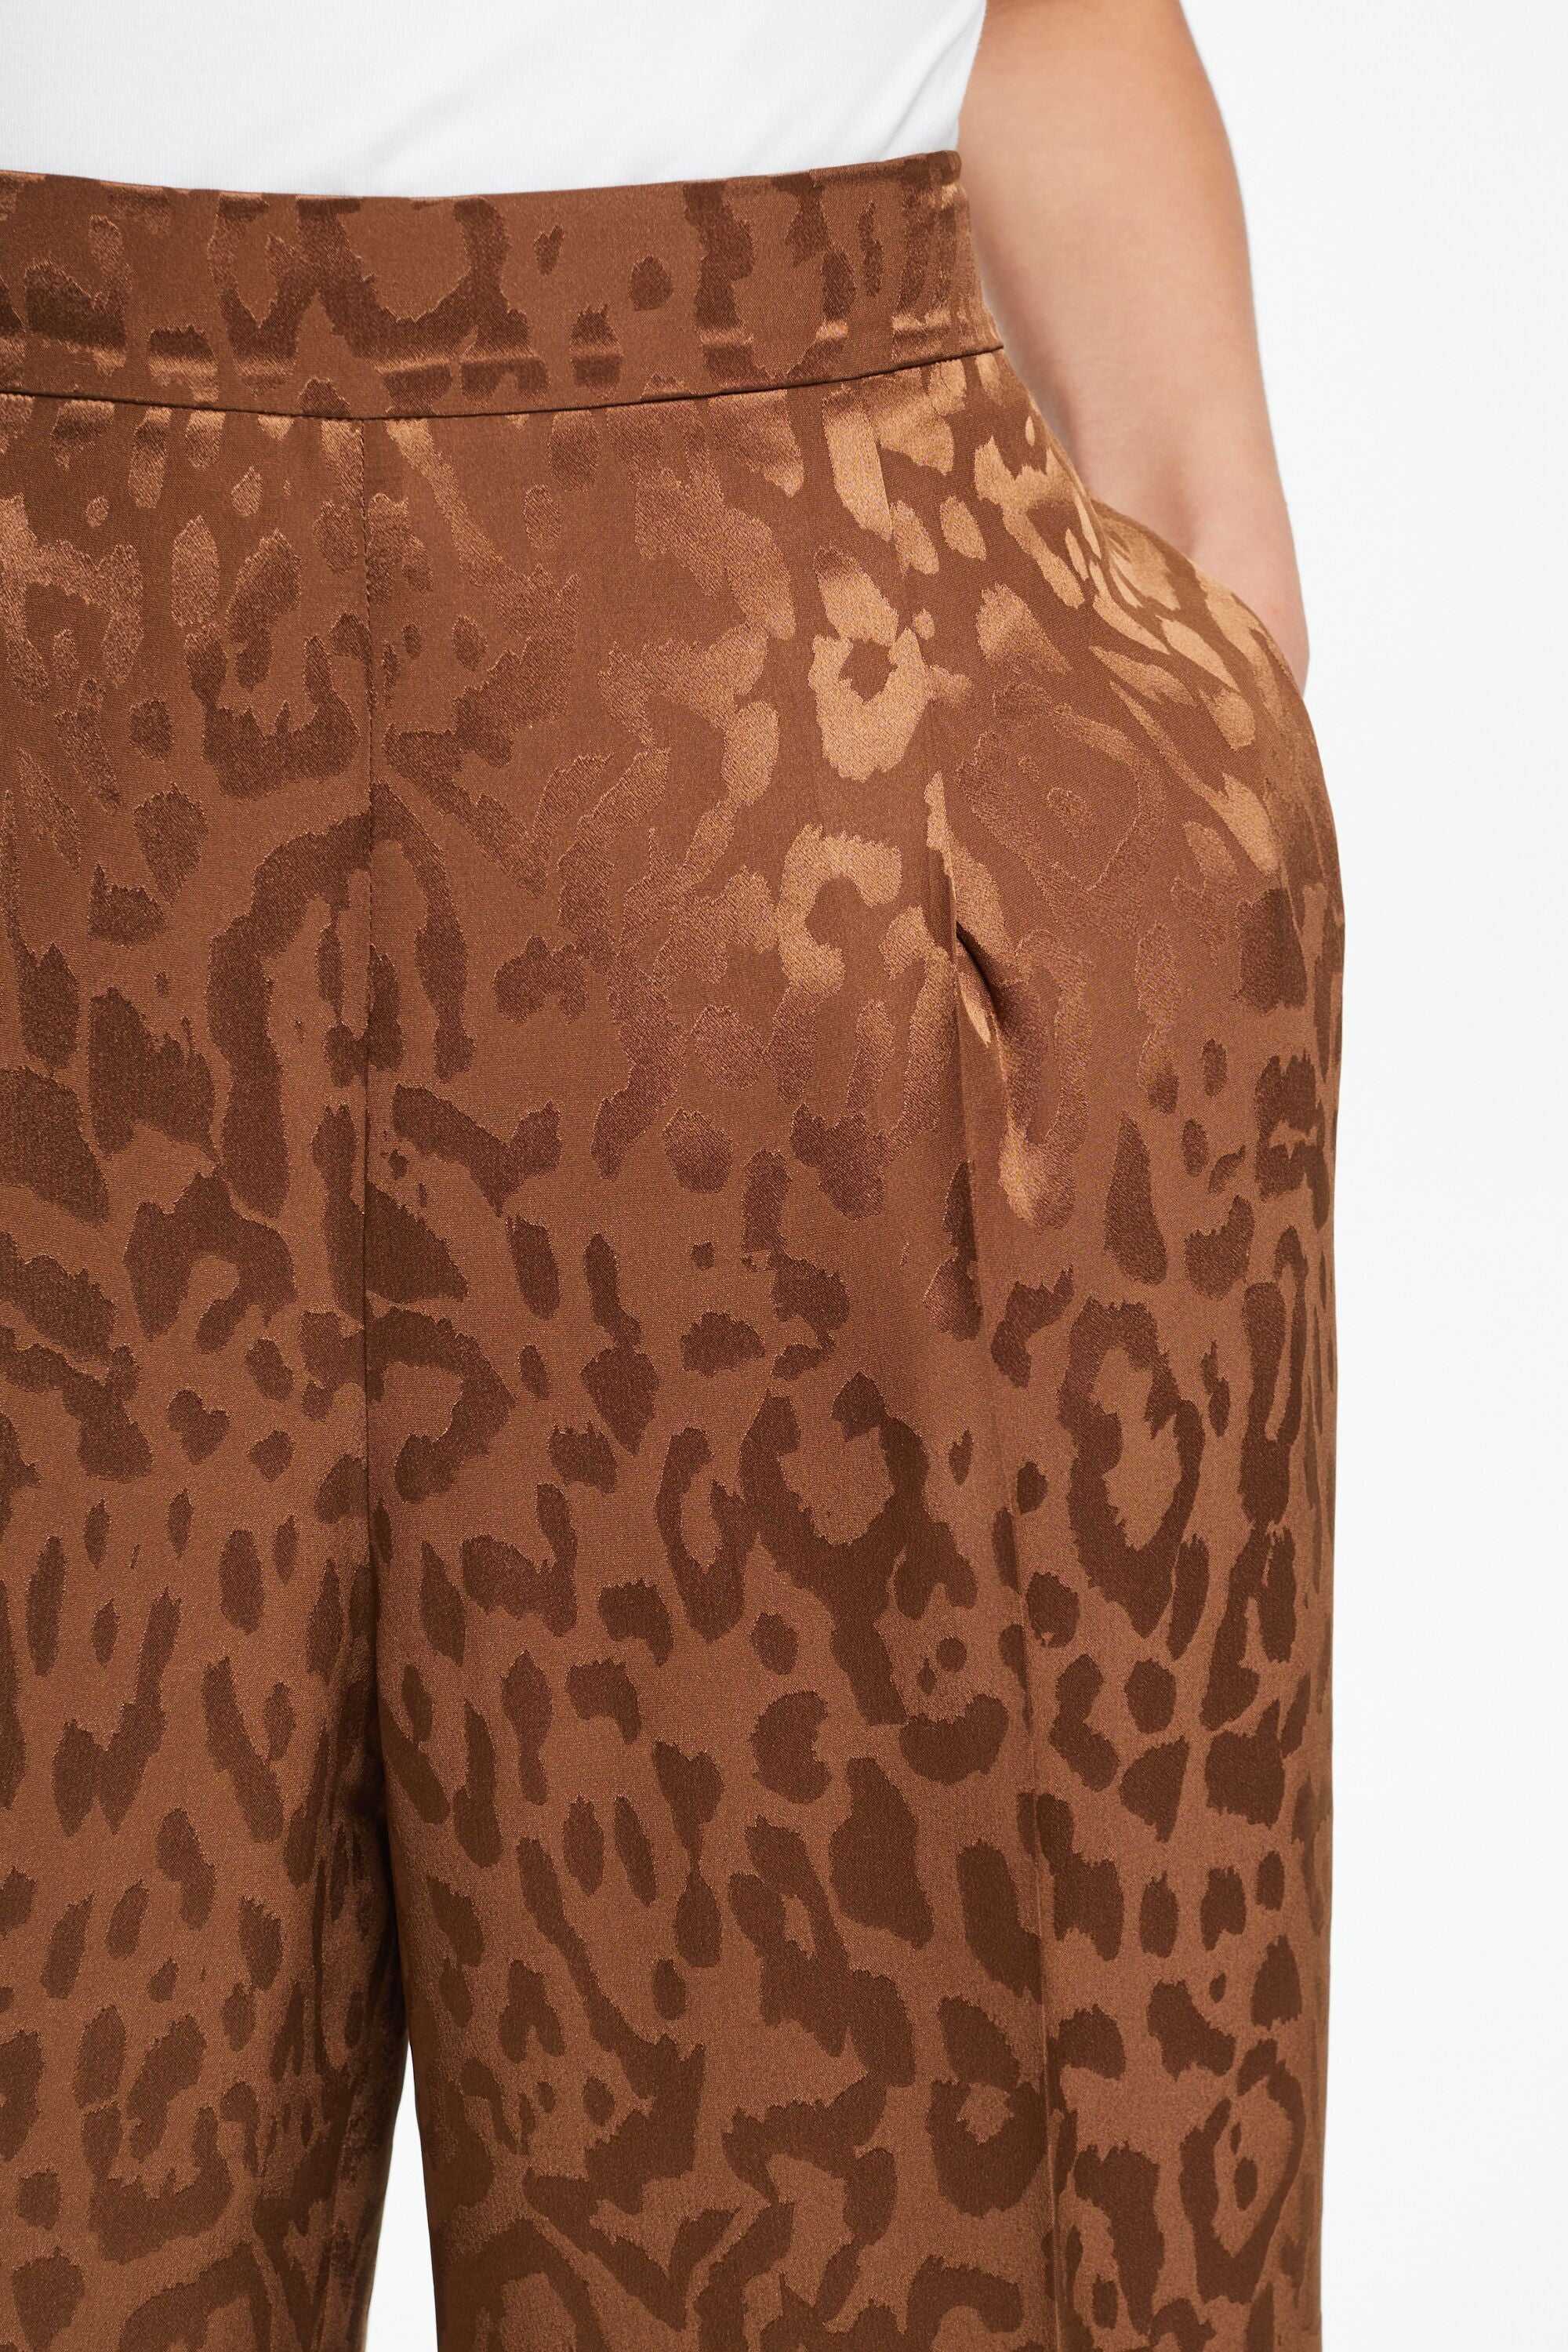 A Printed Pyjama-Style Pants Set + Crocs | 15 Outfit Ideas to Style Crocs  Like a Pro | POPSUGAR Fashion UK Photo 9